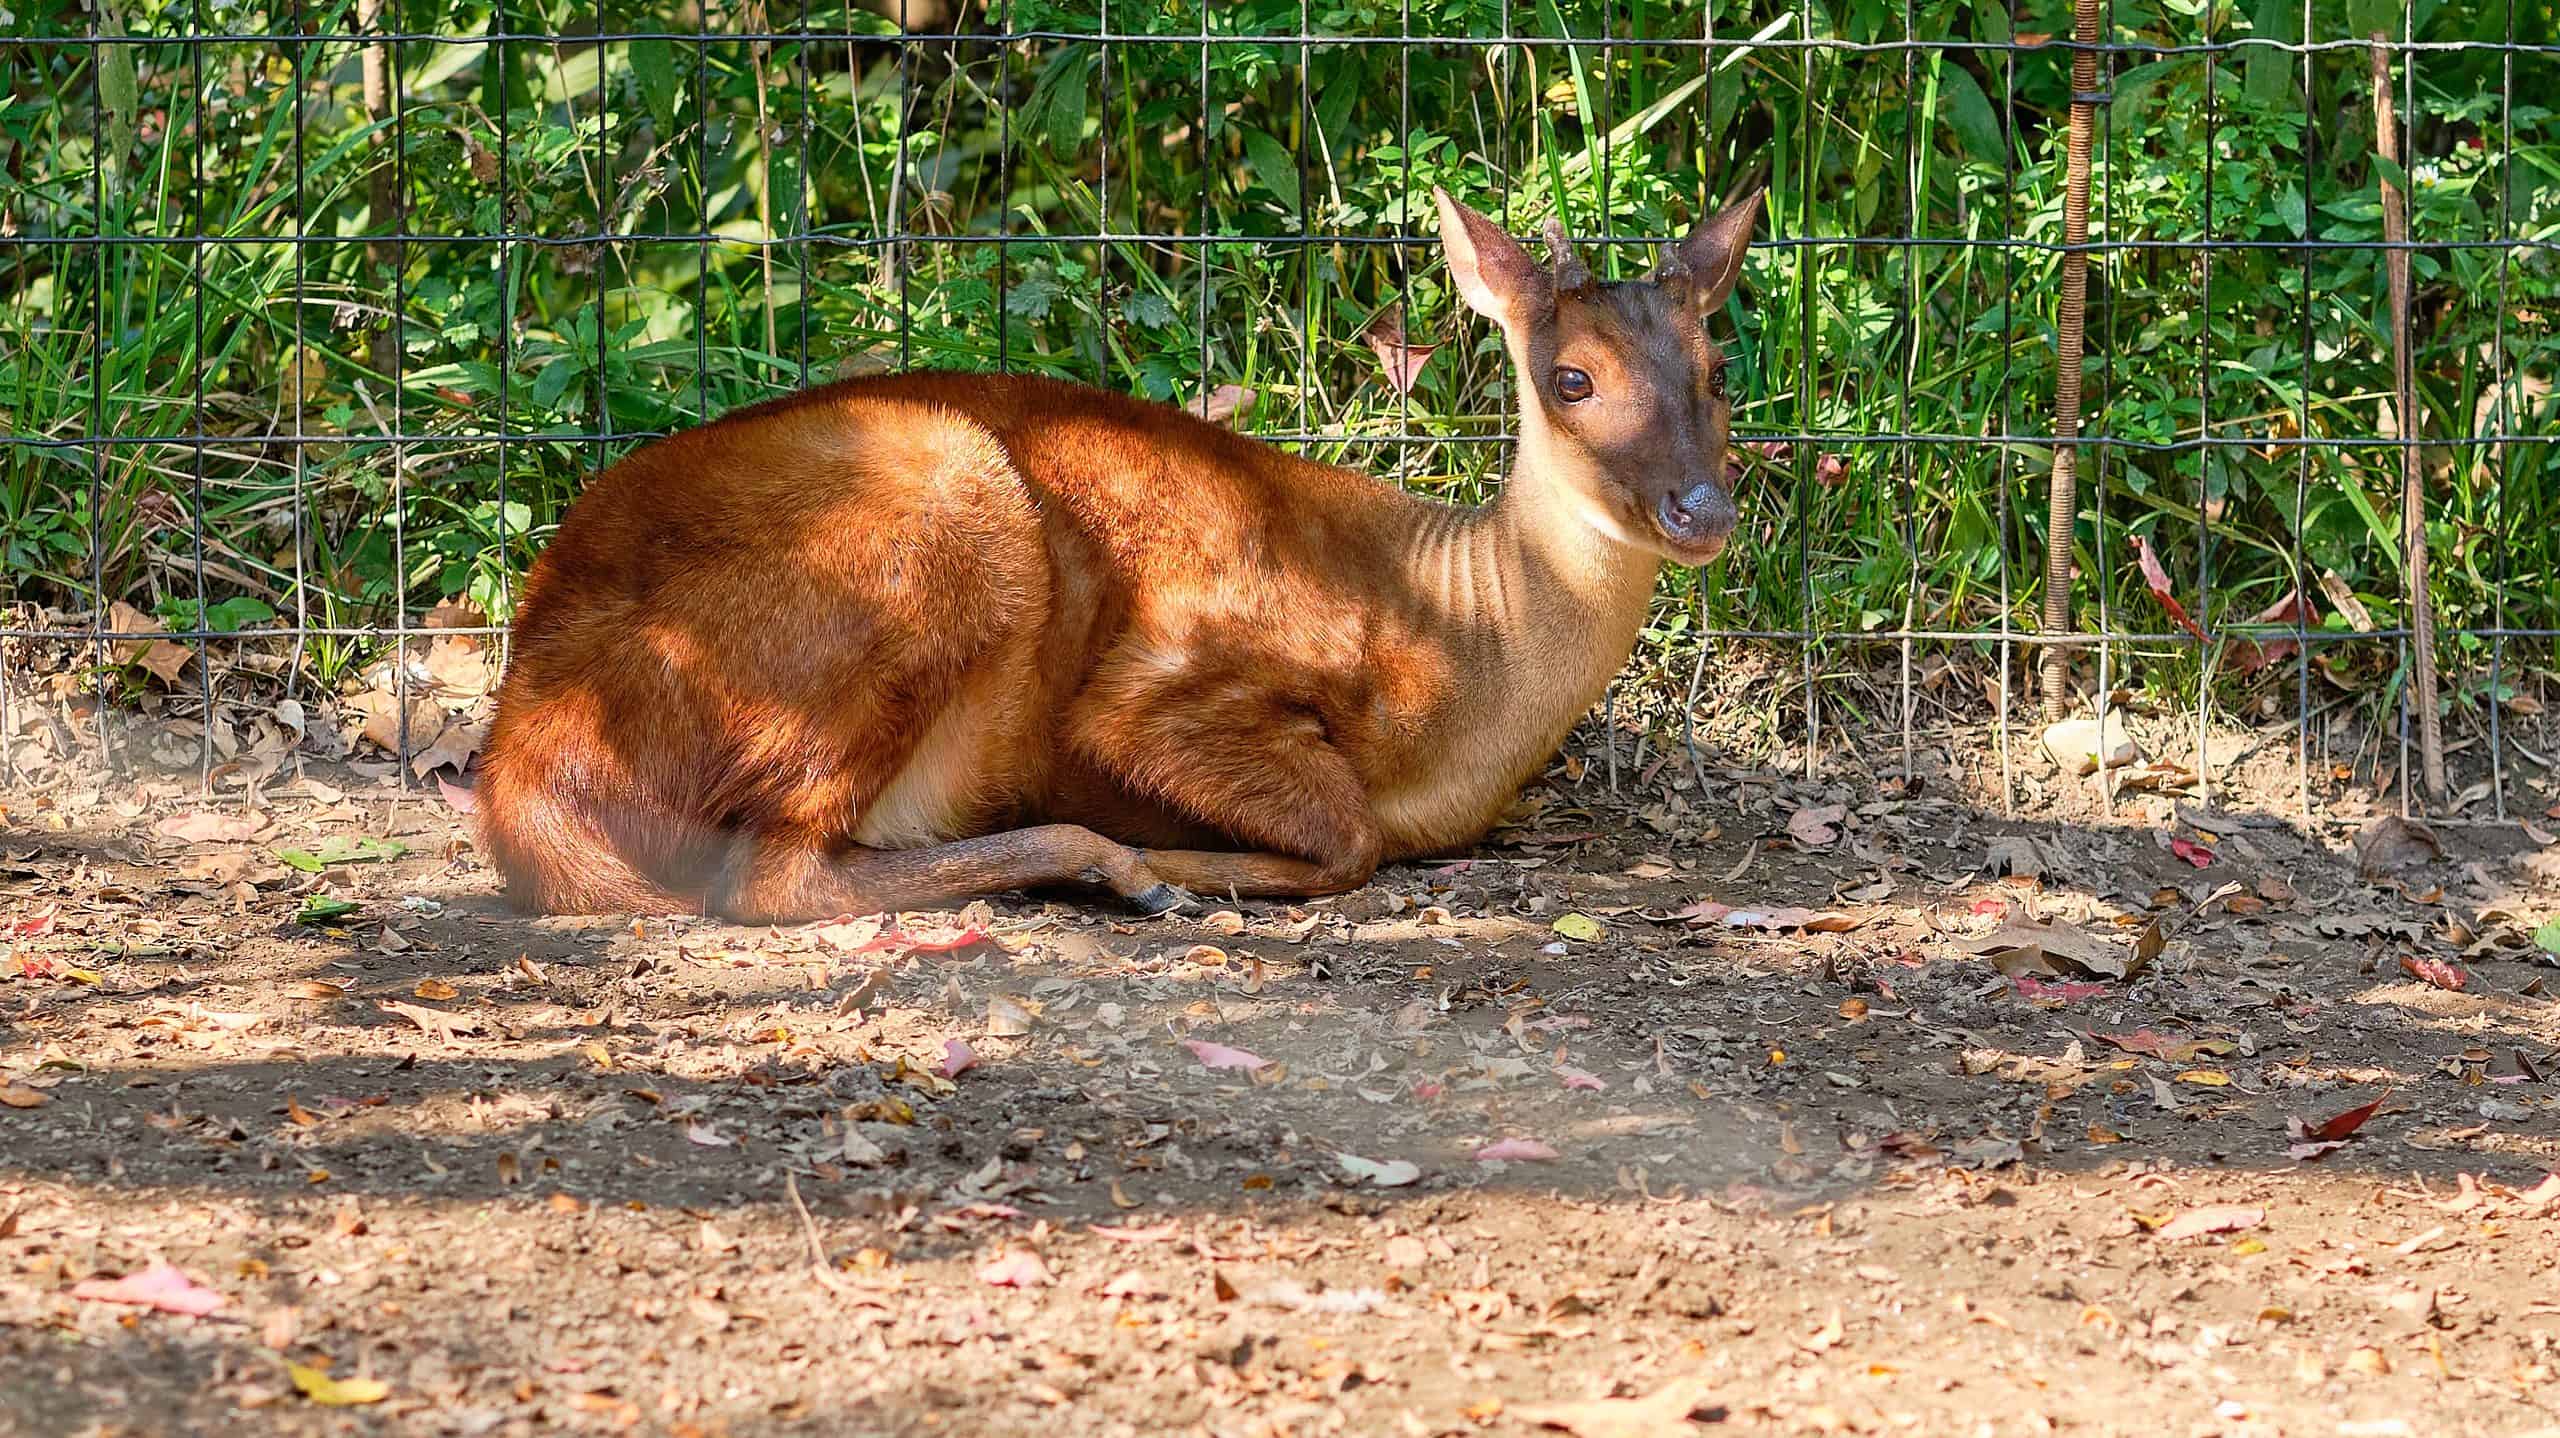 Brocket Deer - La specie di cervo più piccola